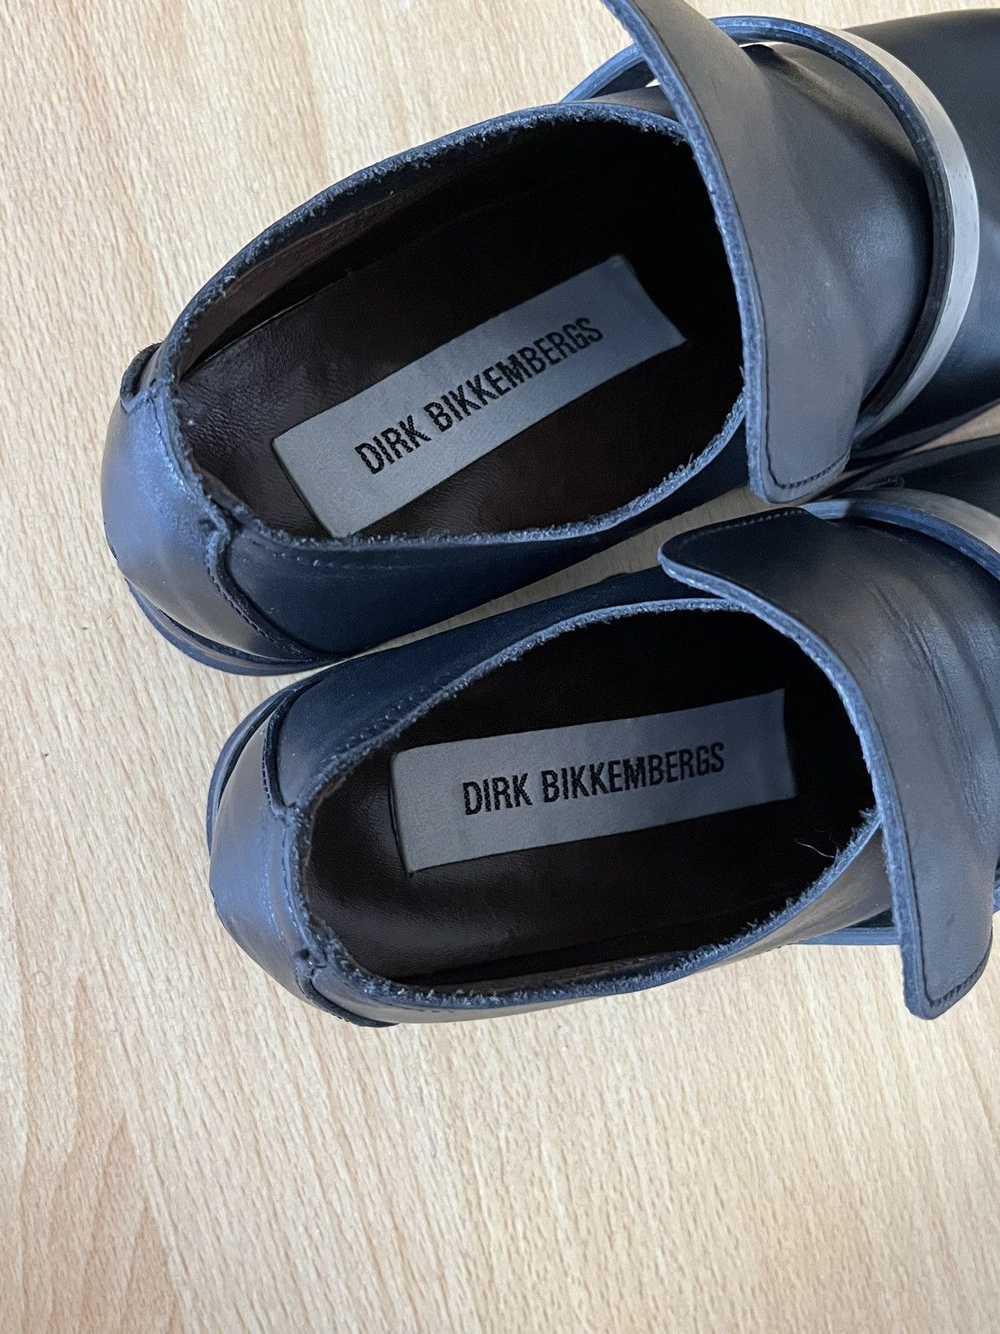 Dirk Bikkembergs AW97 Vintage Black Derby shoes - image 3